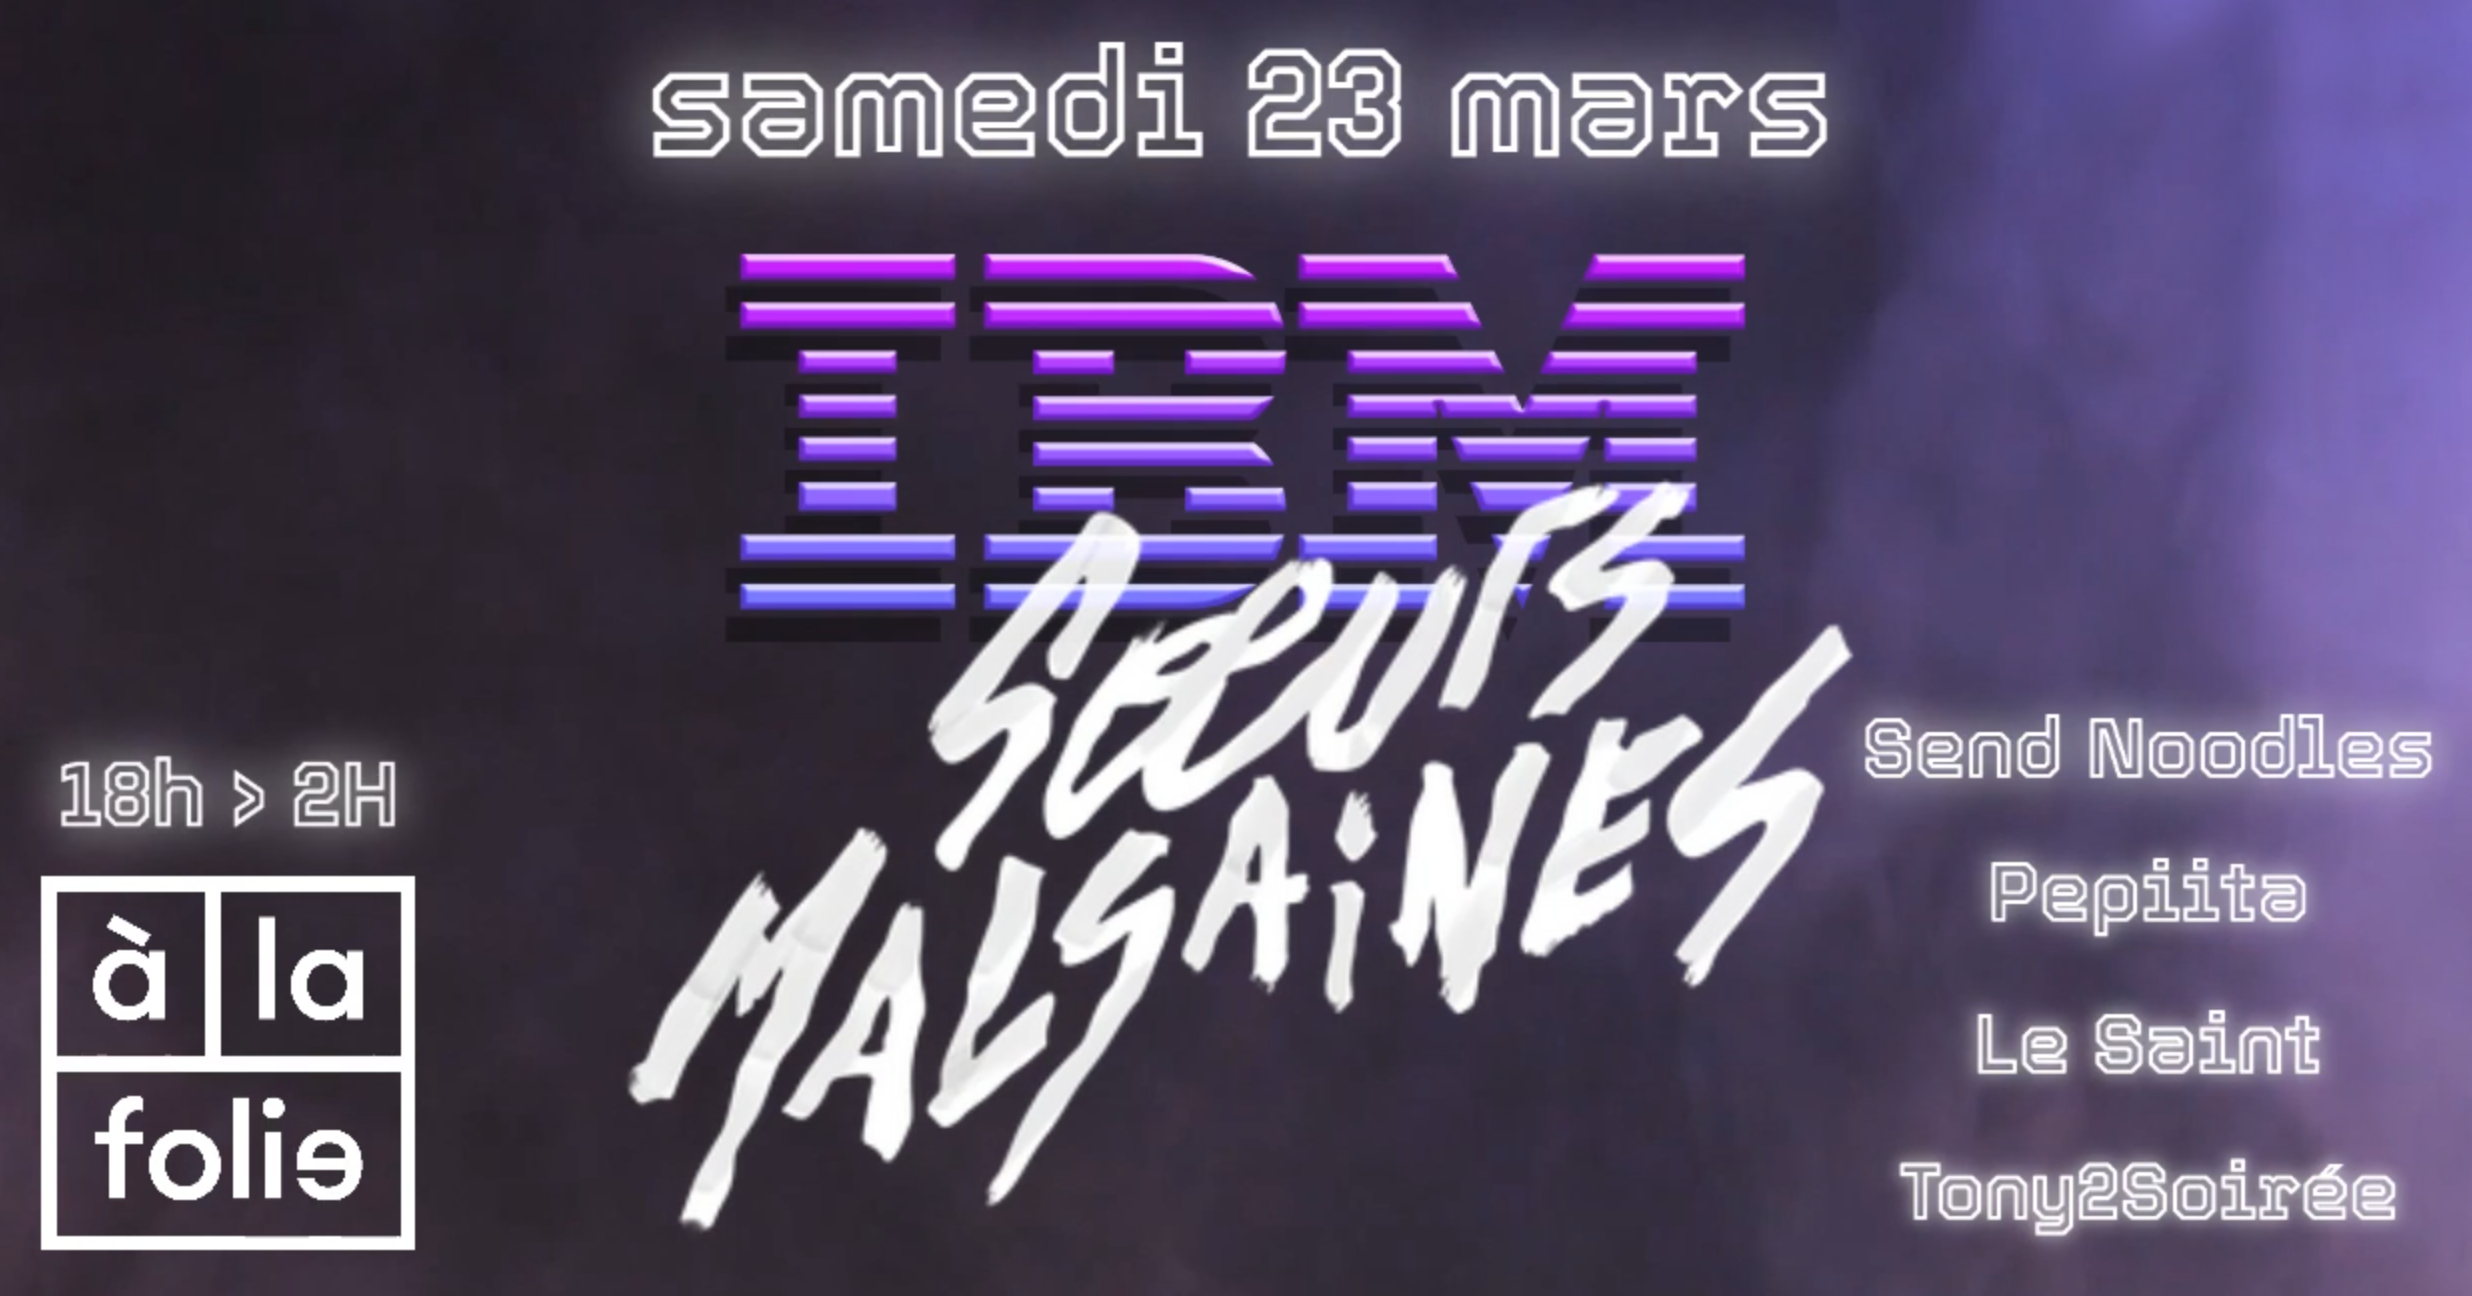 IBM x Soeurs Malsaines